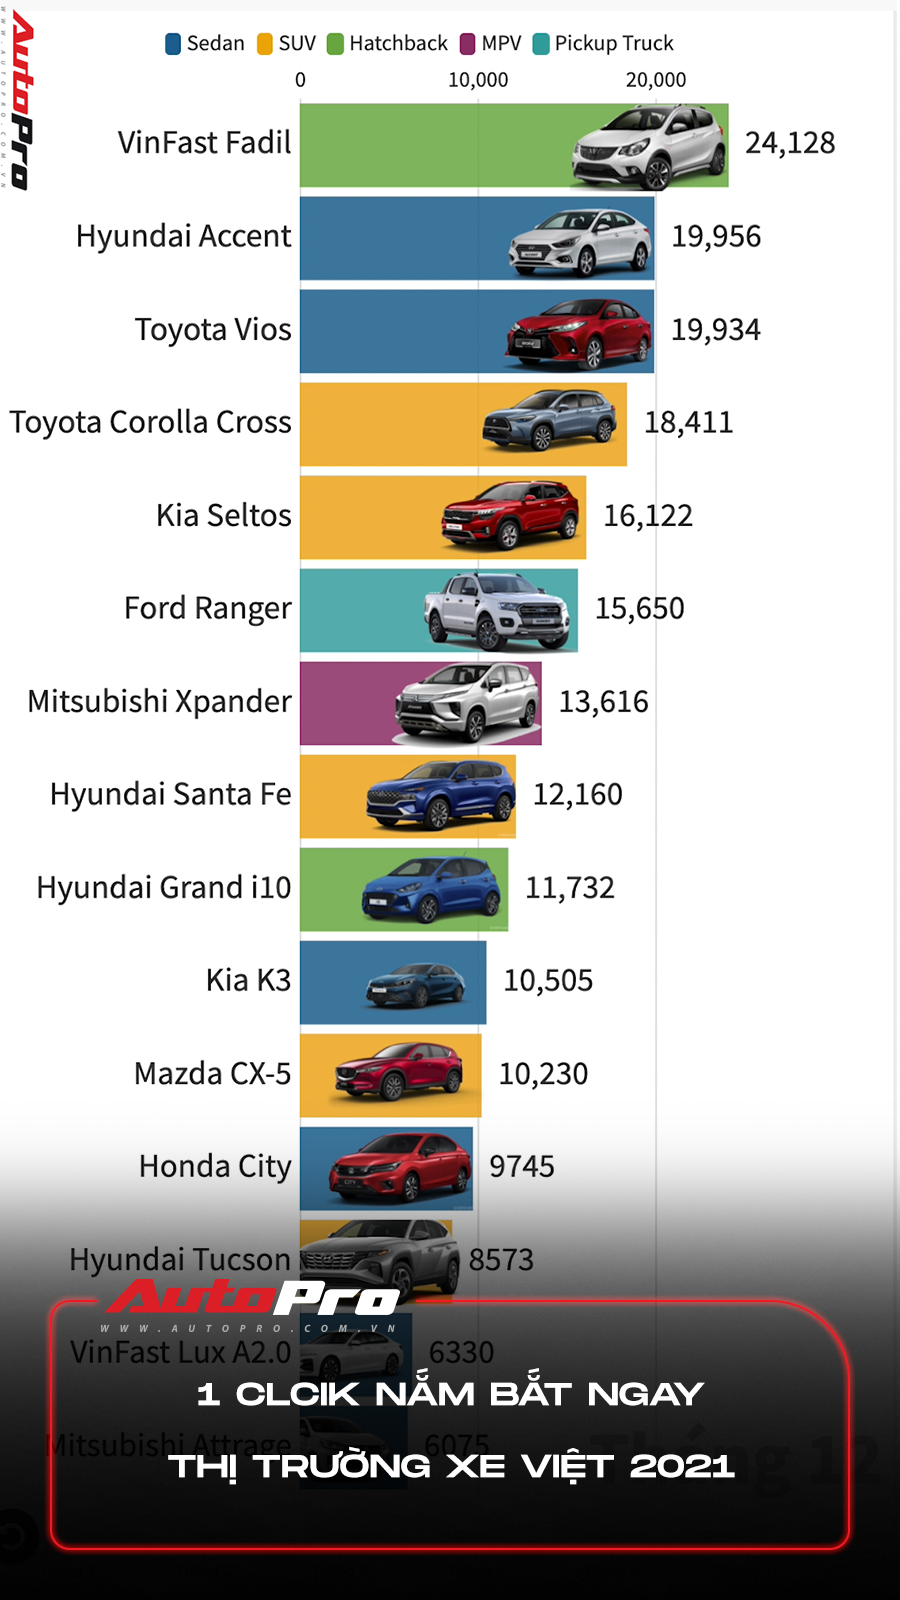 1 click nắm ngay top 10 xe thị trường xe Việt trong năm 2021